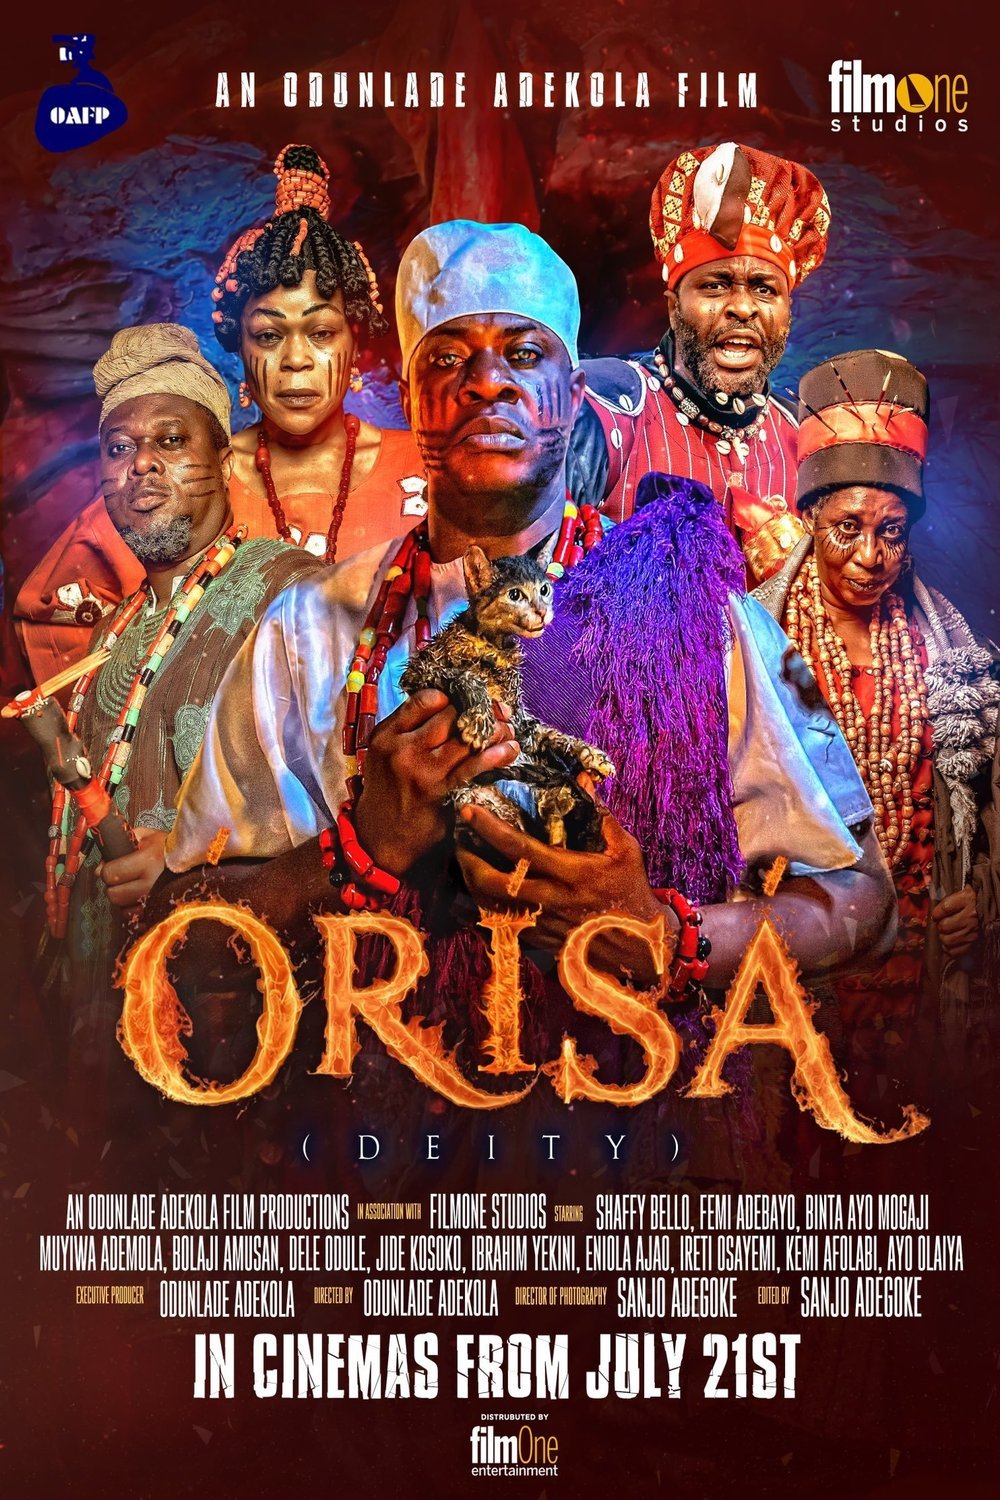 Yoruba poster of the movie Orisa